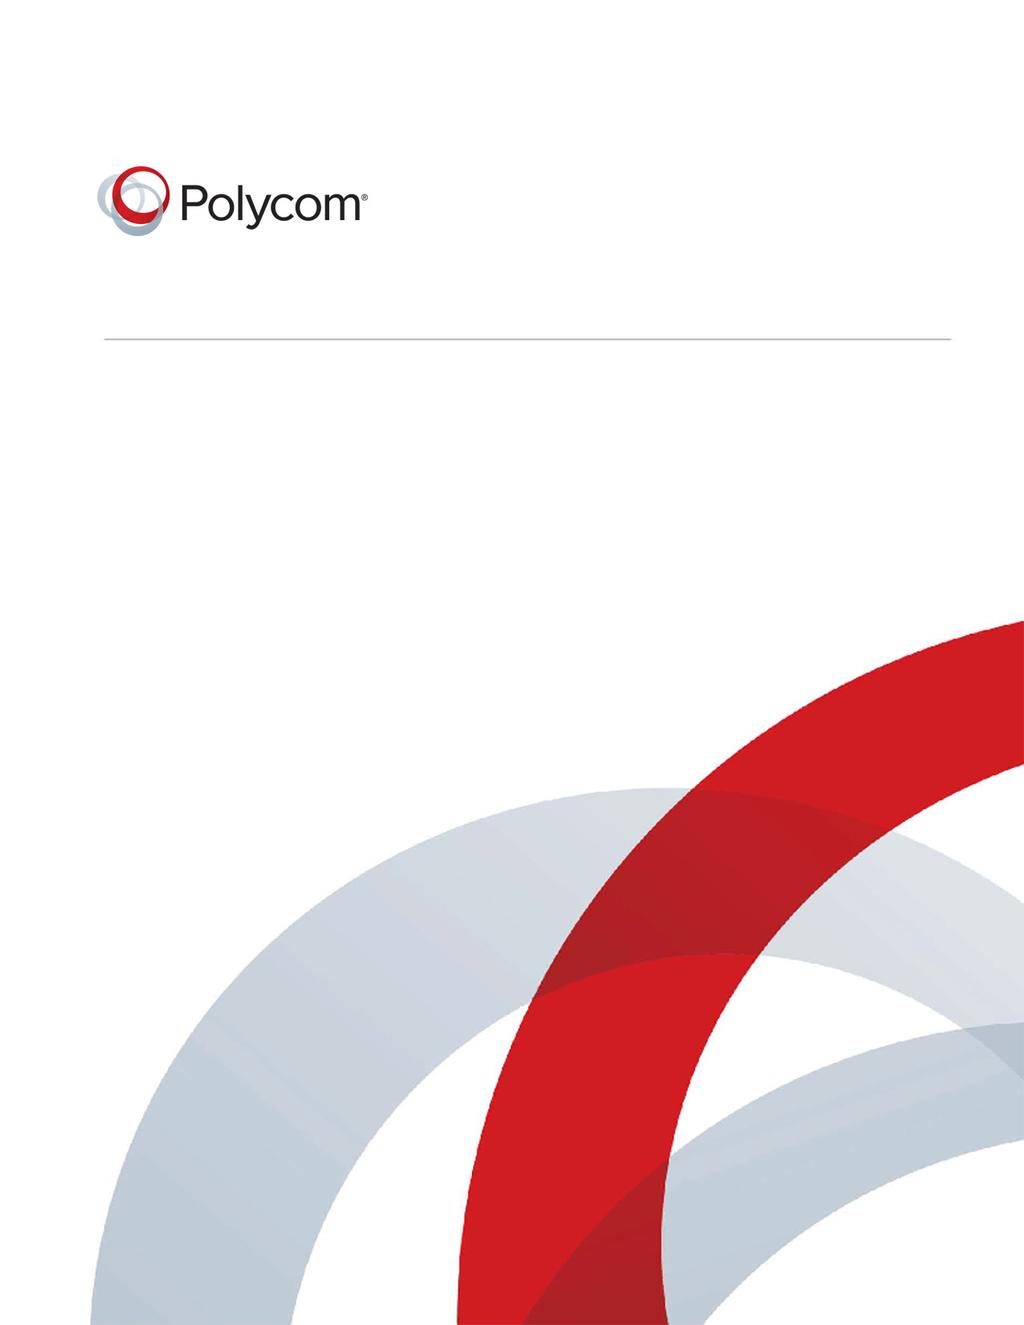 1.6 March 2014 3725-69809-001/A Polycom RealPresence